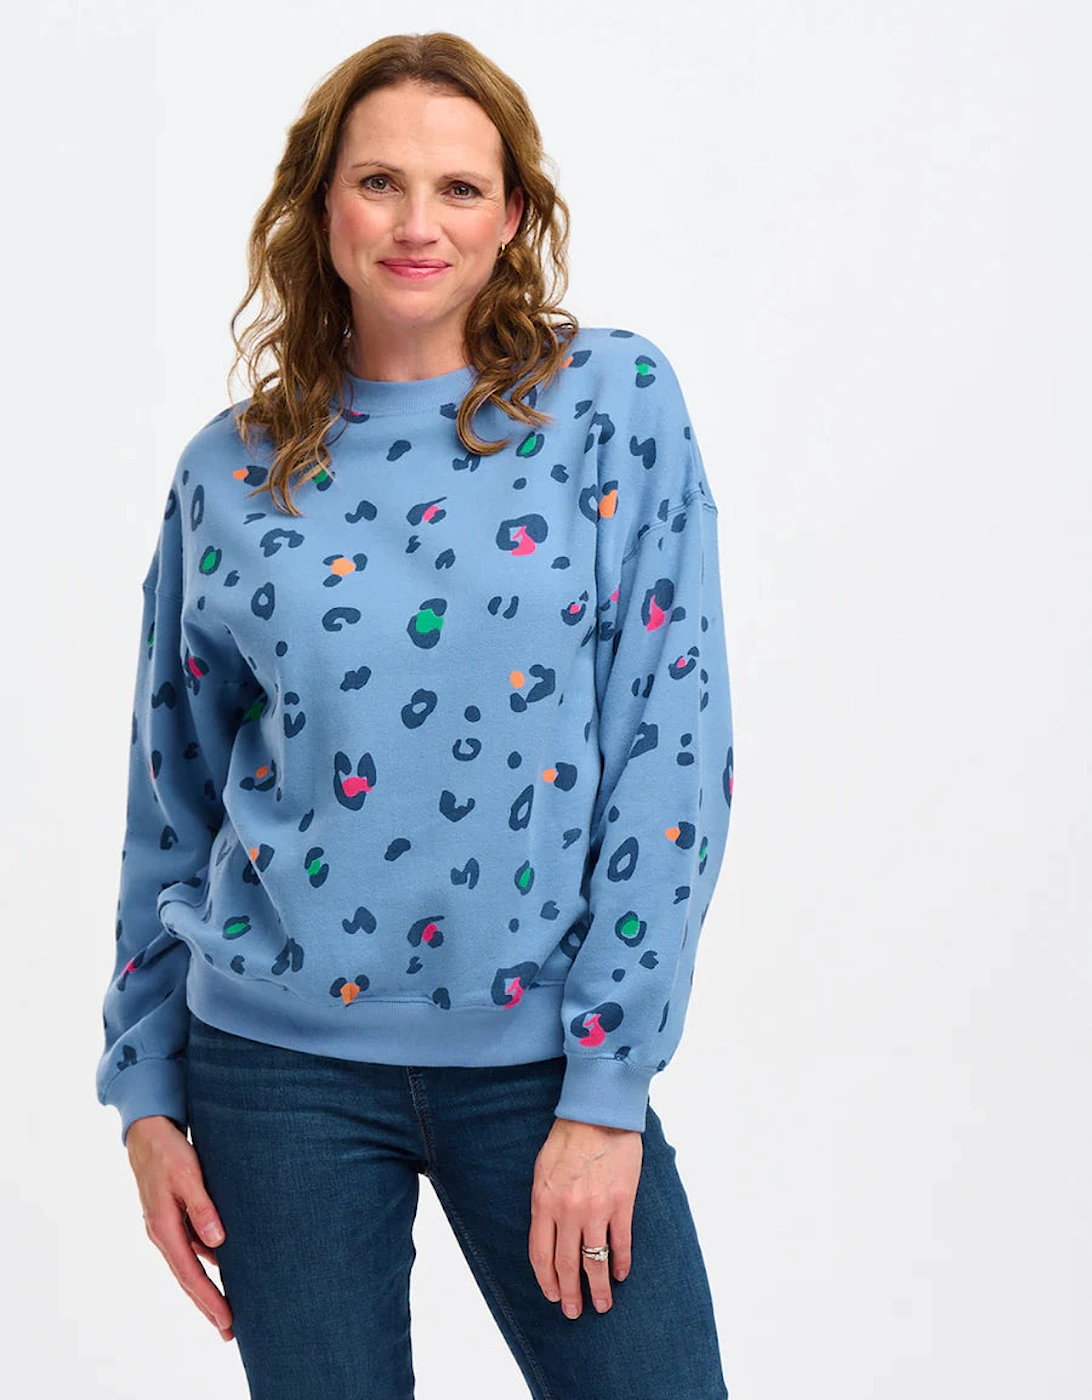 Eadie sweatshirt in colour pop leopard print